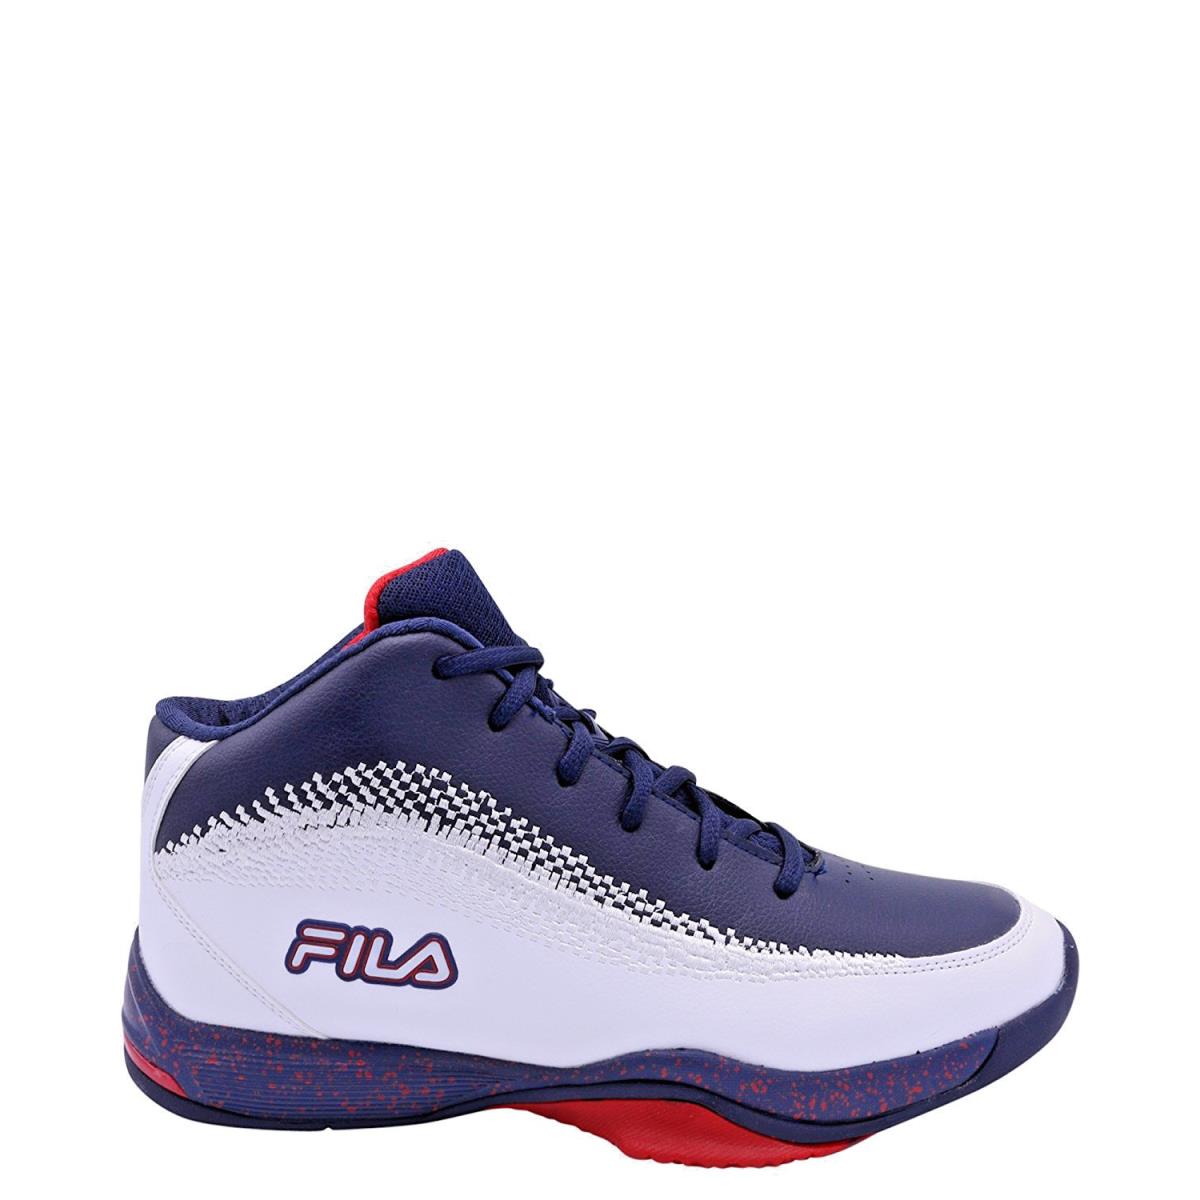 Fila Men`s Contingent 4 Basketball Sneaker White Navy Red Size 9